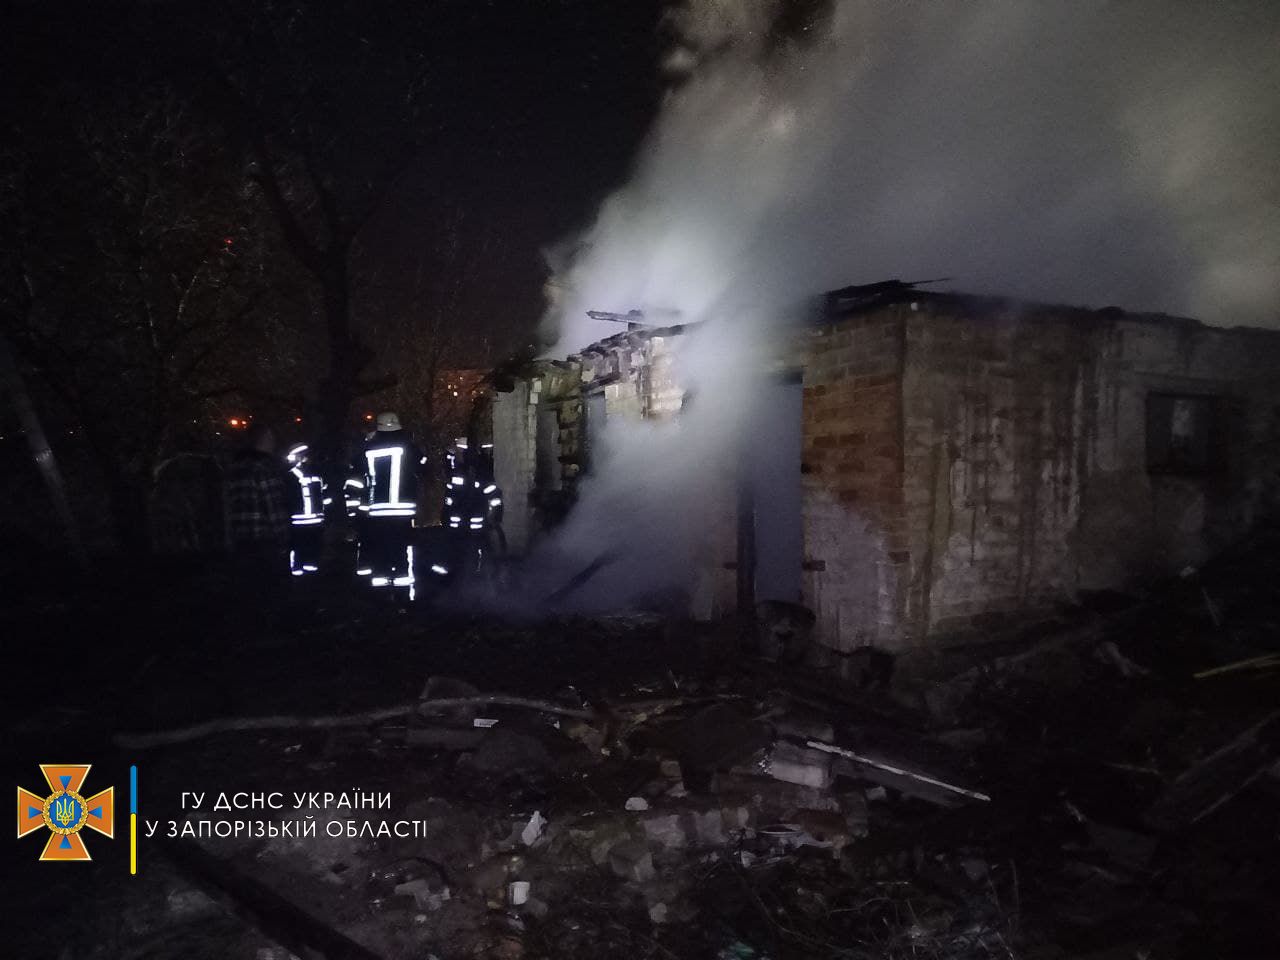 В соцсетях опубликовали ВИДЕО пожара в Запорожье, на котором погибли мужчина и ребенок